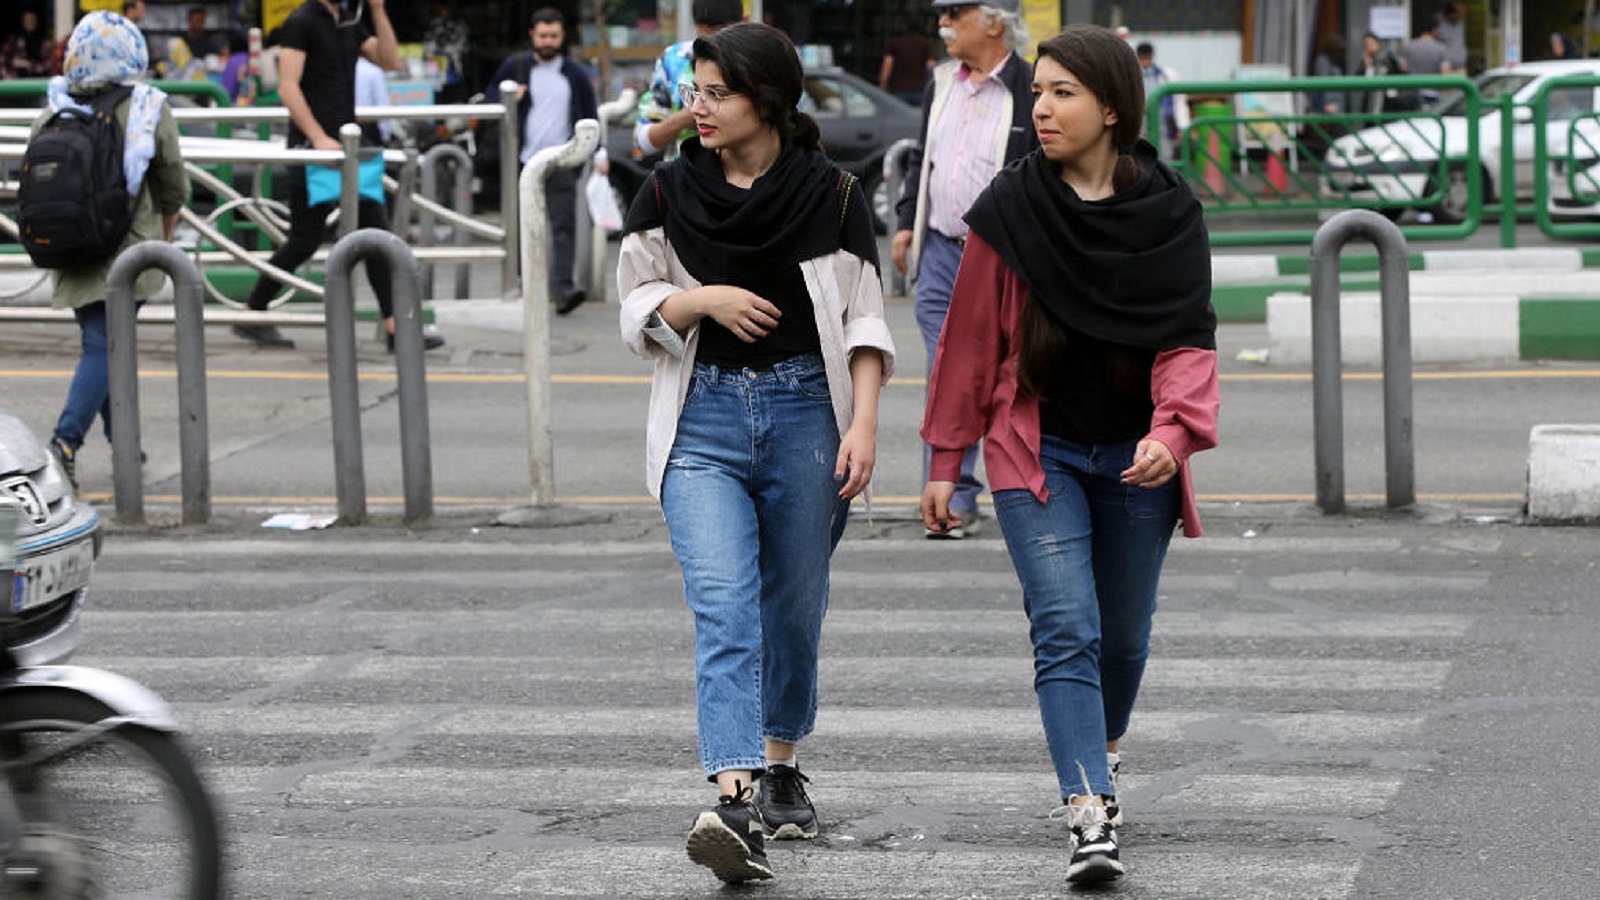 إيران تتجه لتخفيف العقوبة على نزع الحجاب